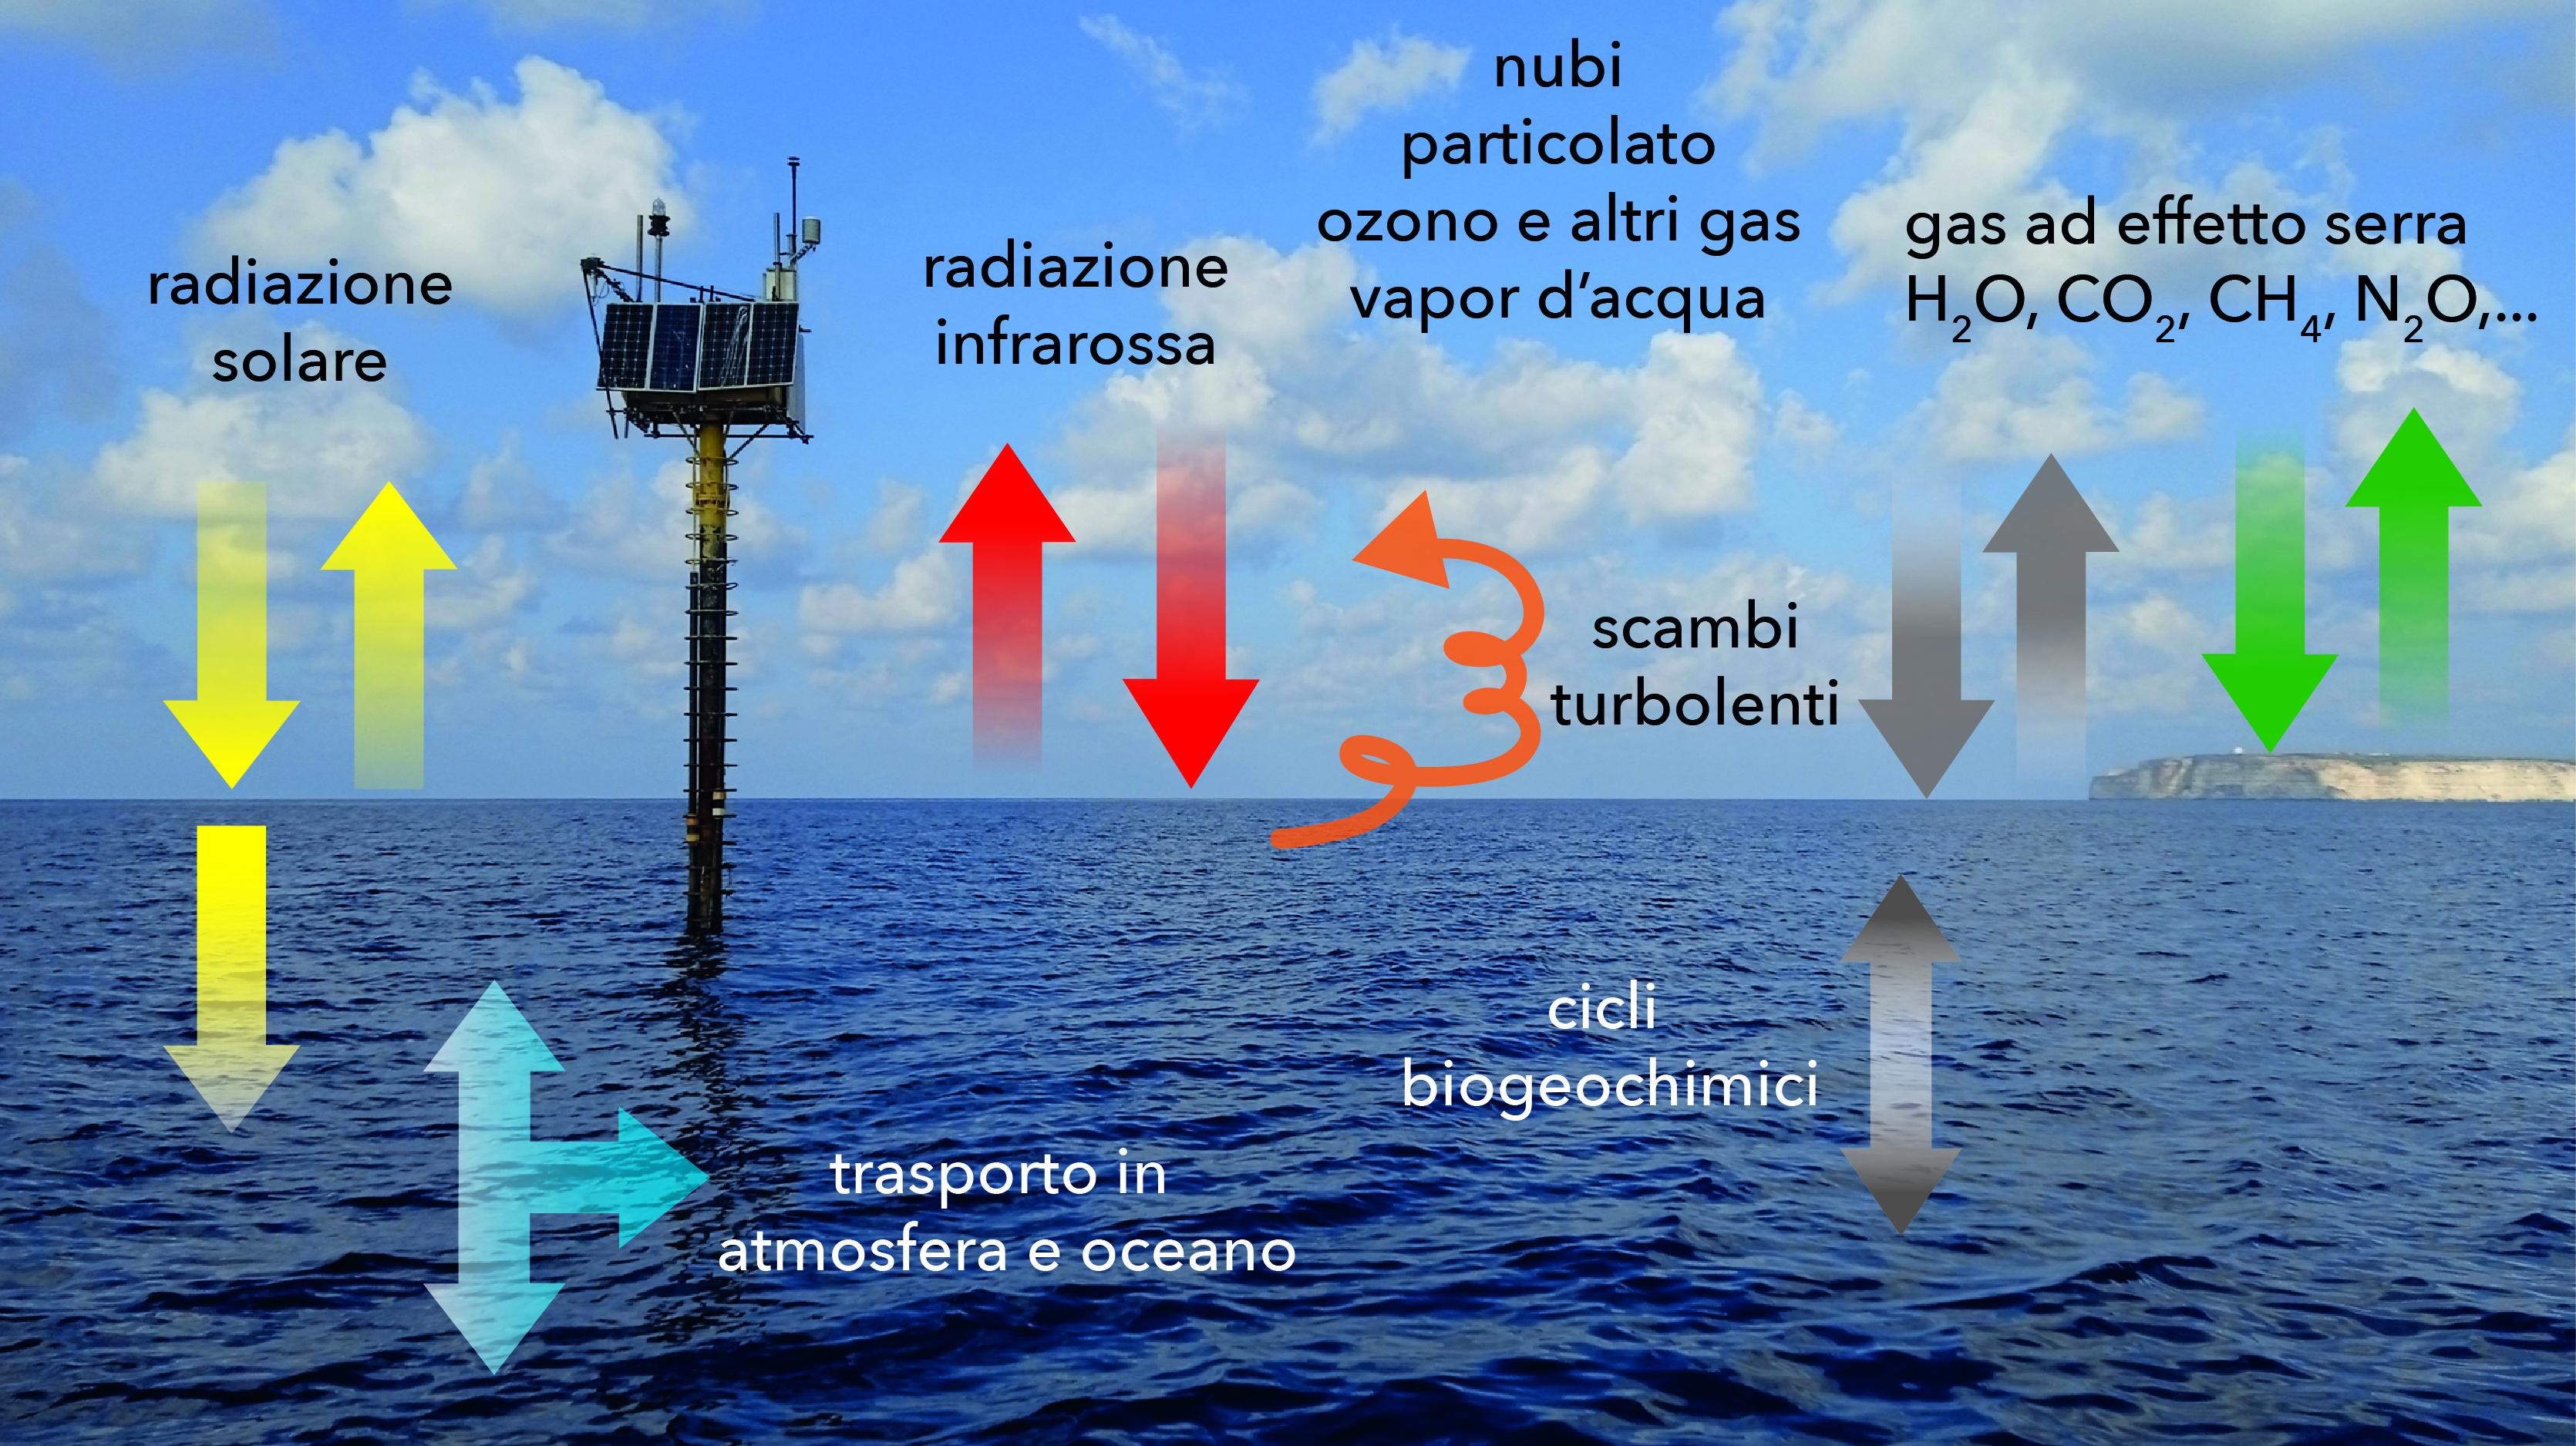 La Figura 2 mostra una foto dell’Osservatorio Oceanografico con il profilo dell’isola sullo sfondo, con evidenziati schematicamente i principali meccanismi di regolazione del clima che vengono studiati a Lampedusa.  Nel funzionamento del clima sono coinvolte interazioni complesse che riguardano scambi ed equilibri tra processi fisici (trasferimento della radiazione solare e infrarossa, trasporto delle masse d’aria e marine; scambi di energia e materia tra i diversi comparti), chimici (reazioni e variazioni di composizione dell’aria e dell’acqua), biologici (interazioni con vegetazione terrestre e acquatica); i diversi processi sono poi tra di loro interconnessi, e regolati da numerosi meccanismi di retroazione, che possono produrre amplificazioni delle perturbazioni di partenza. In particolare, a Lampedusa vengono studiati gli effetti prodotti da modificazioni della composizione (gas ad effetto serra, inquinanti, particolato, nubi) e struttura dell’atmosfera e dell’oceano sul bilancio della radiazione [ad es. 4], e dell’energia; gli scambi di energia [ad es. 5] e materia, in particolare di vapor d’acqua e CO2, che avvengono tra oceano ed atmosfera. Questi processi sono alla base del funzionamento del clima e presentano connessioni fortissime con il ciclo idrologico, la qualità dell’aria e delle acque ed i processi di trasporto.